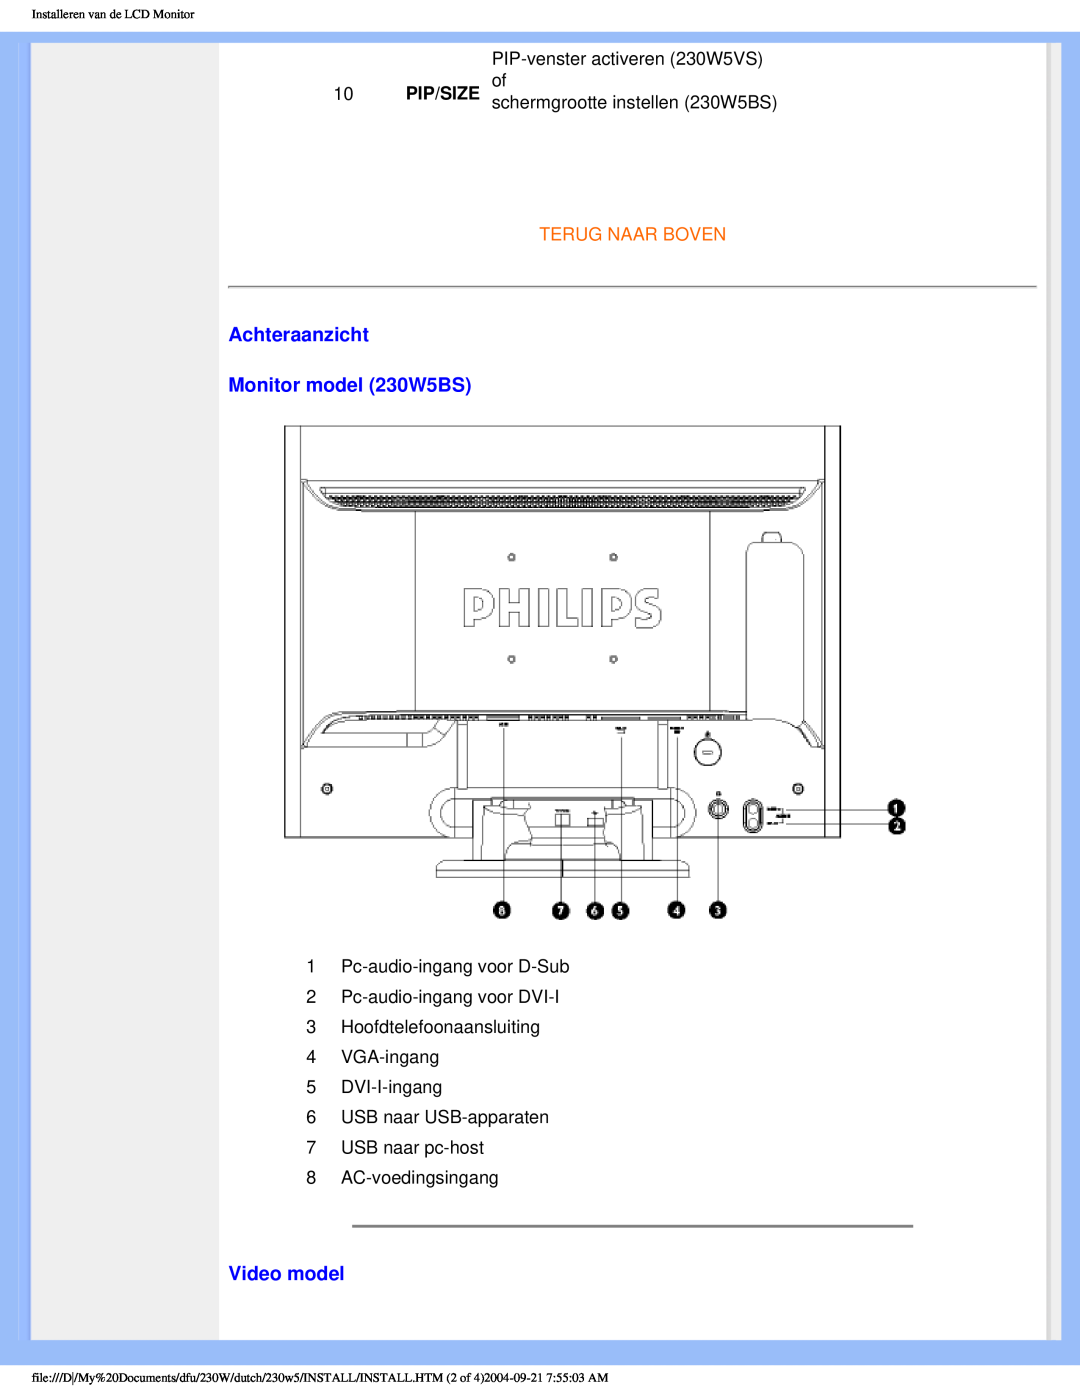 Philips user manual Achteraanzicht Monitor model 230W5BS, Video model, Terug Naar Boven 